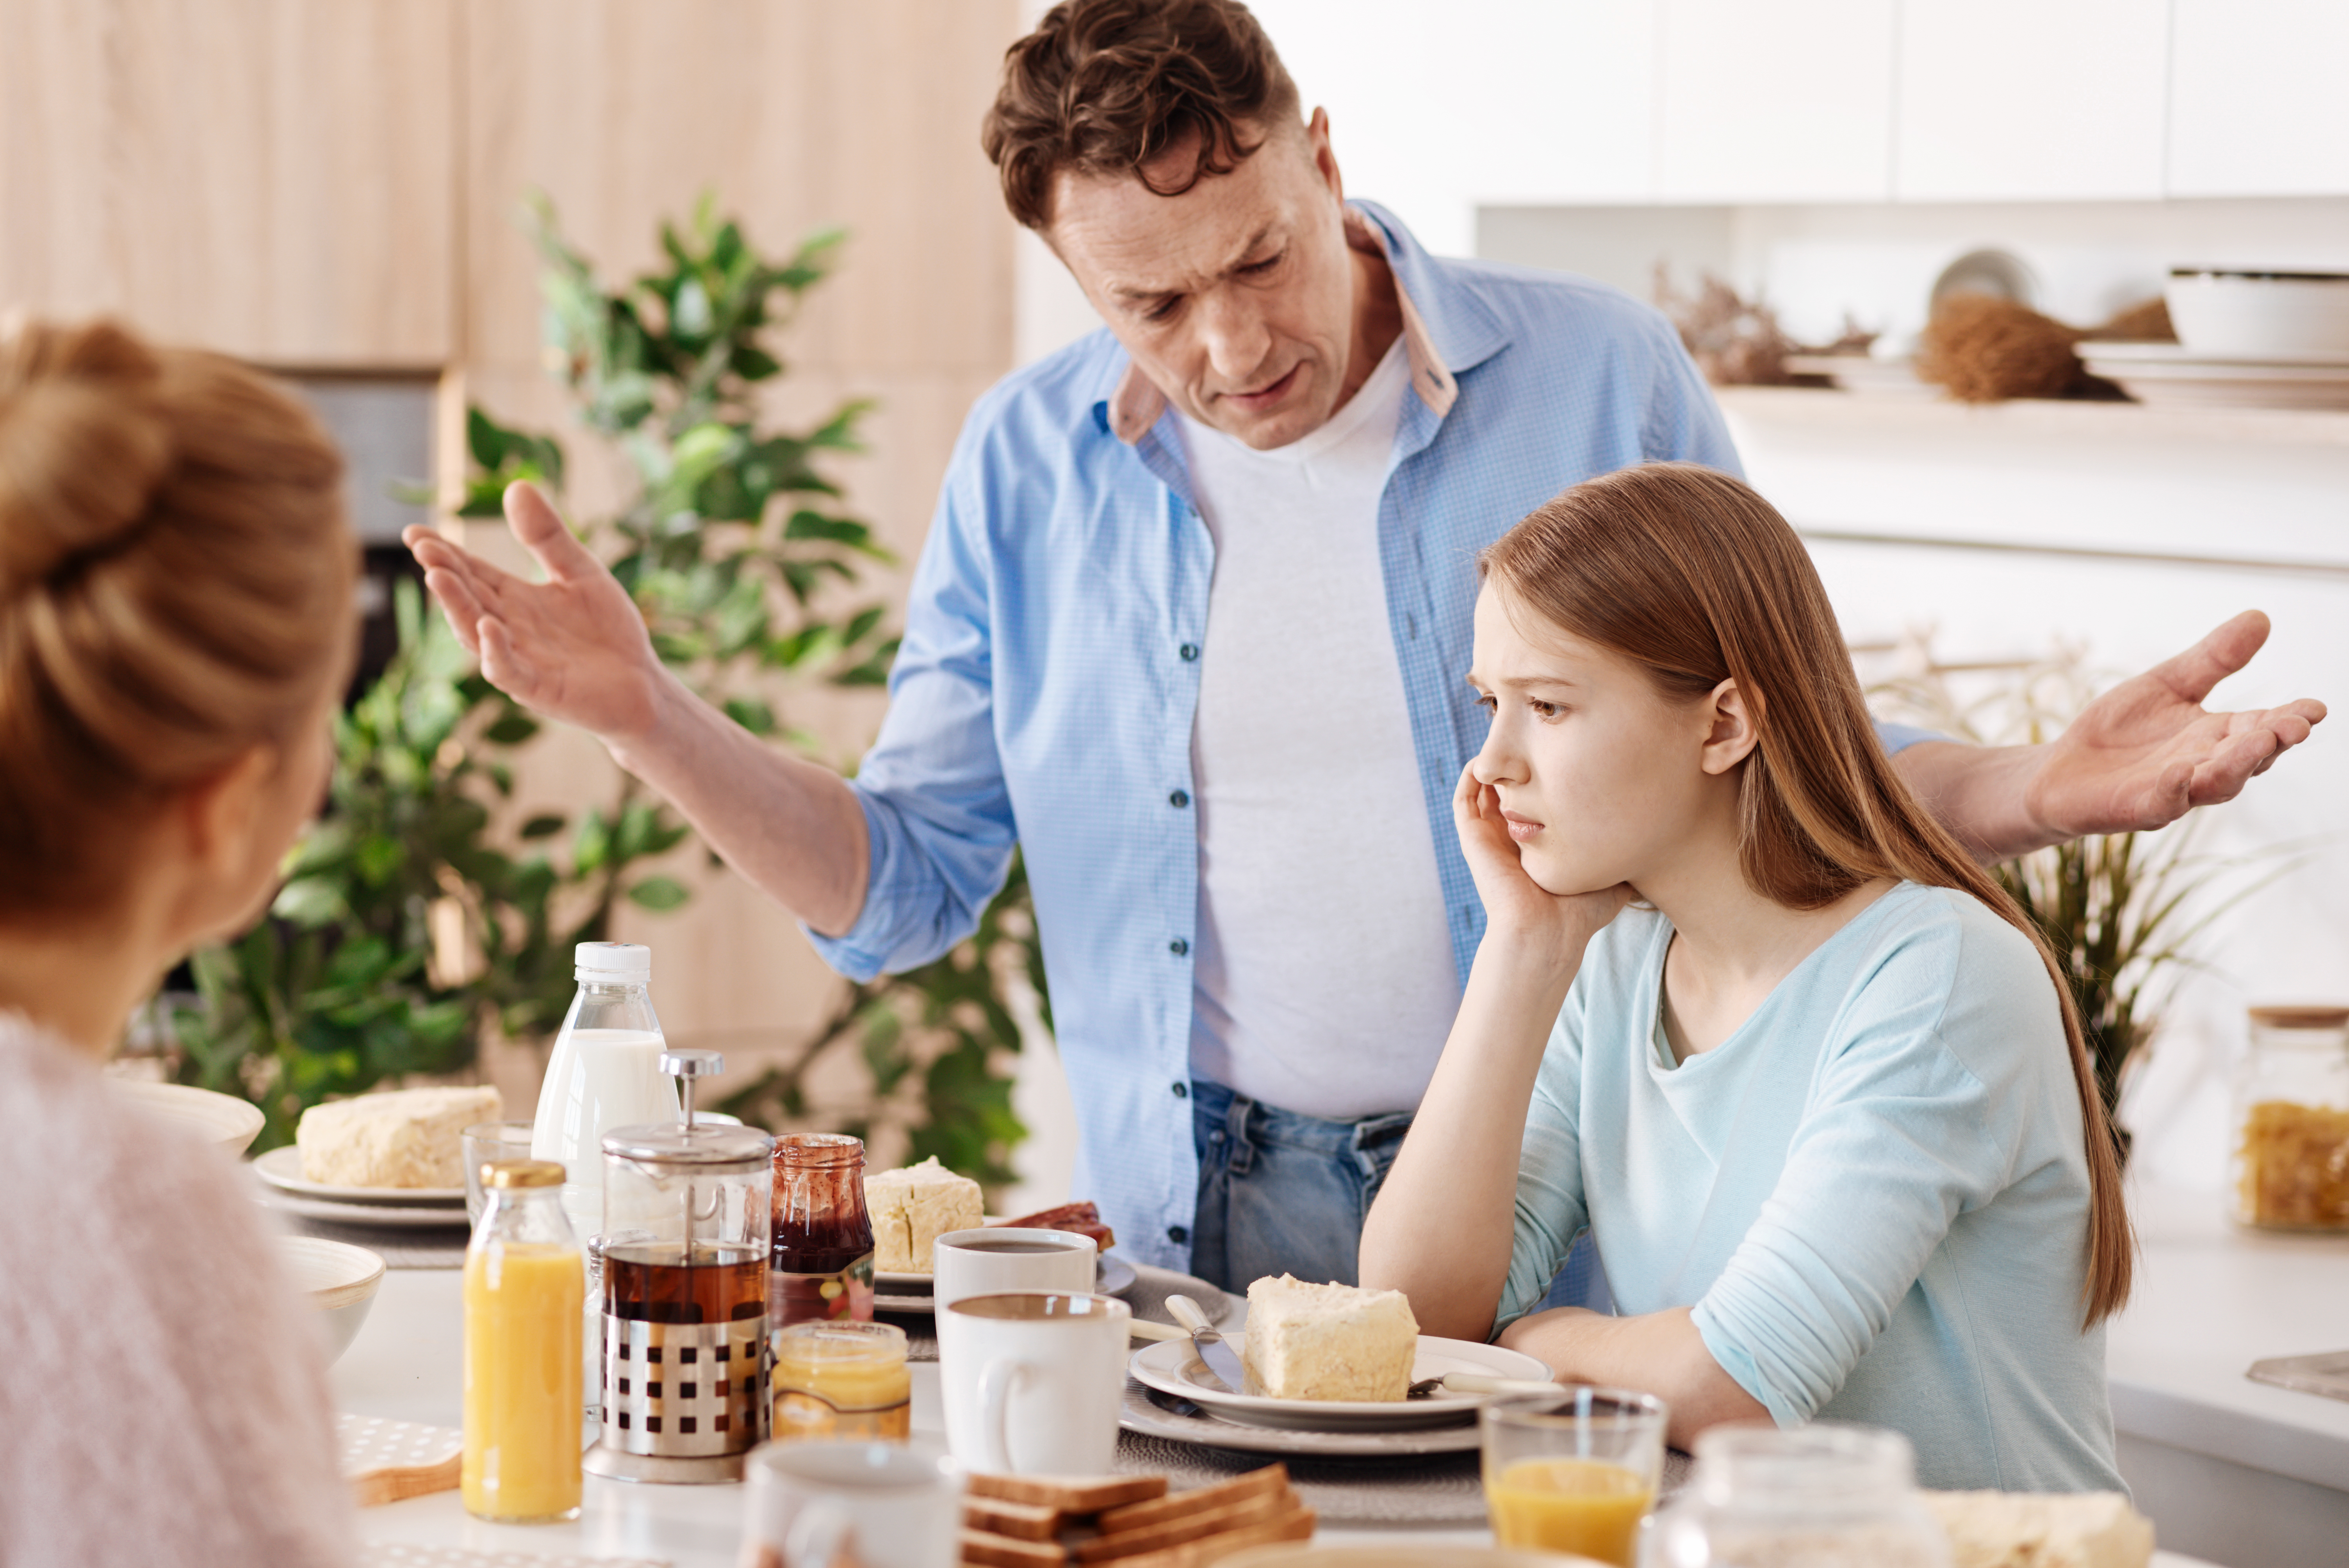 Le père a constamment essayé d'arranger le comportement de sa fille. | Source : Shutterstock